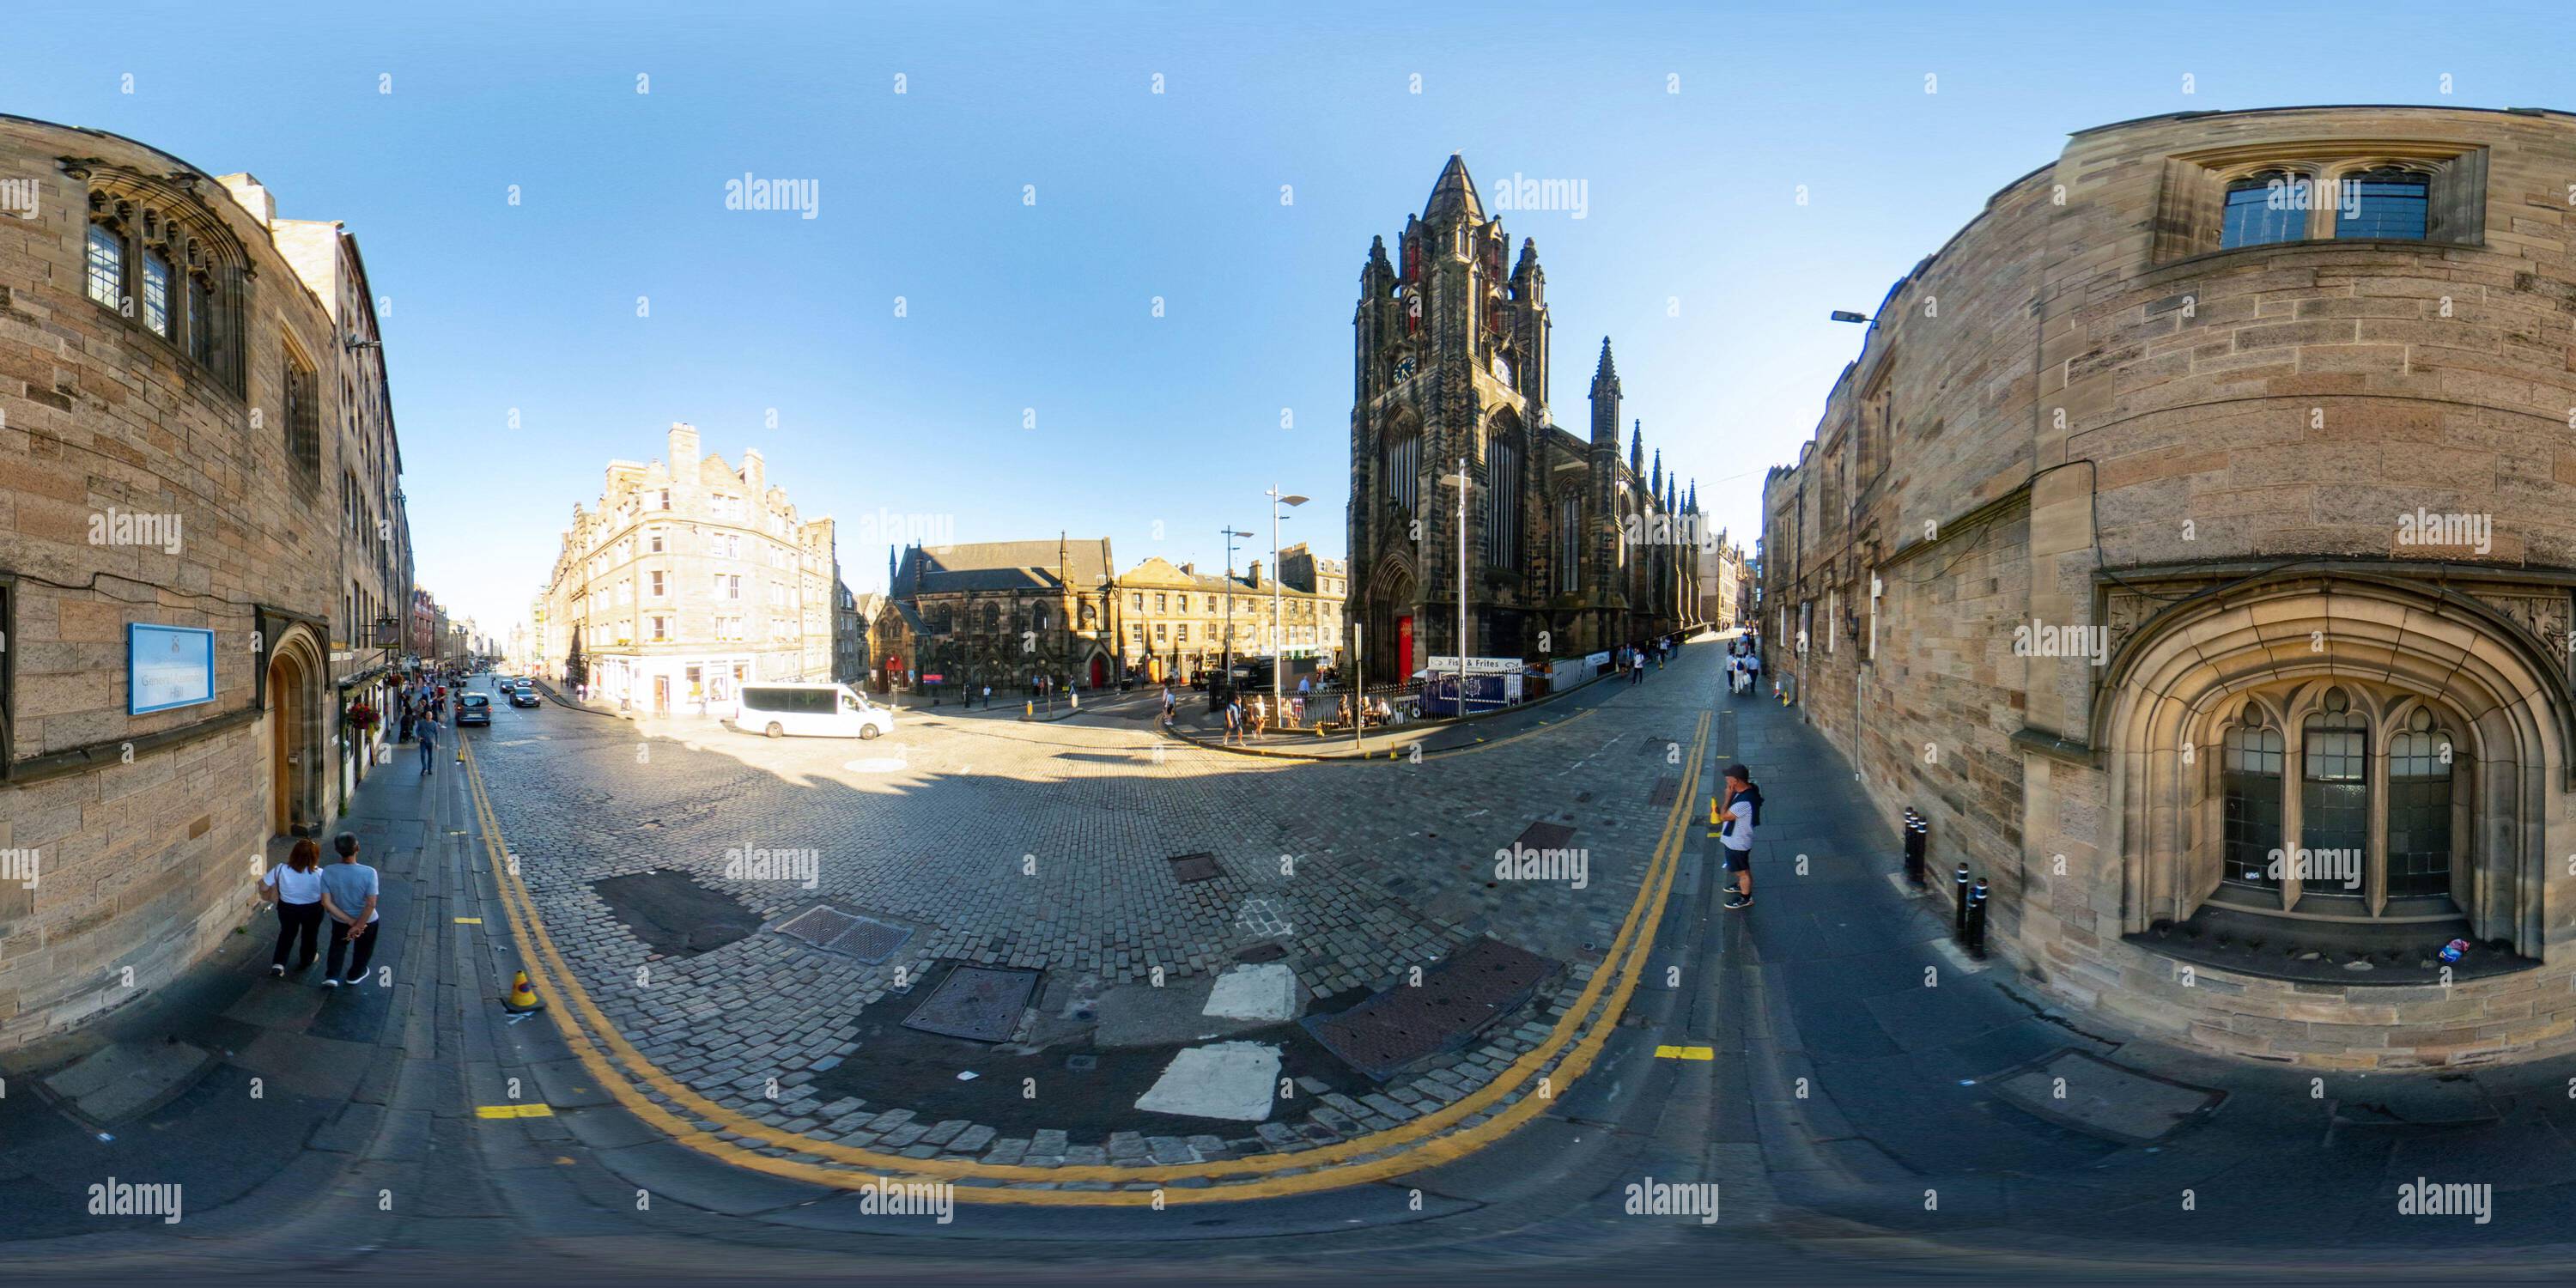 Visualizzazione panoramica a 360 gradi di 360 photo sferico distretto storico Edimburgo Scozia Regno Unito